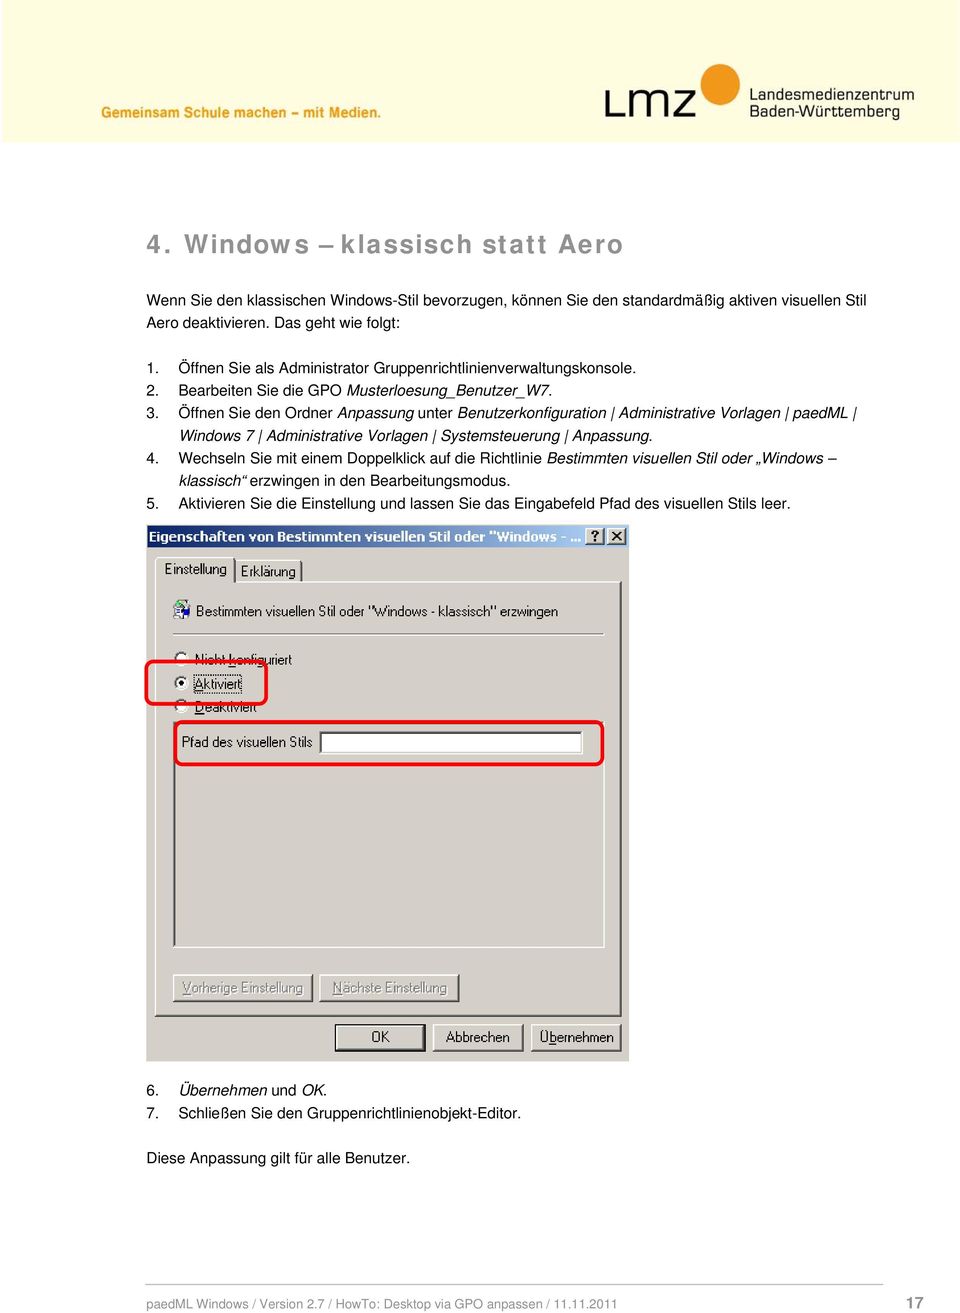 Öffnen Sie den Ordner Anpassung unter Benutzerkonfiguration Administrative Vorlagen paedml Windows 7 Administrative Vorlagen Systemsteuerung Anpassung. 4.